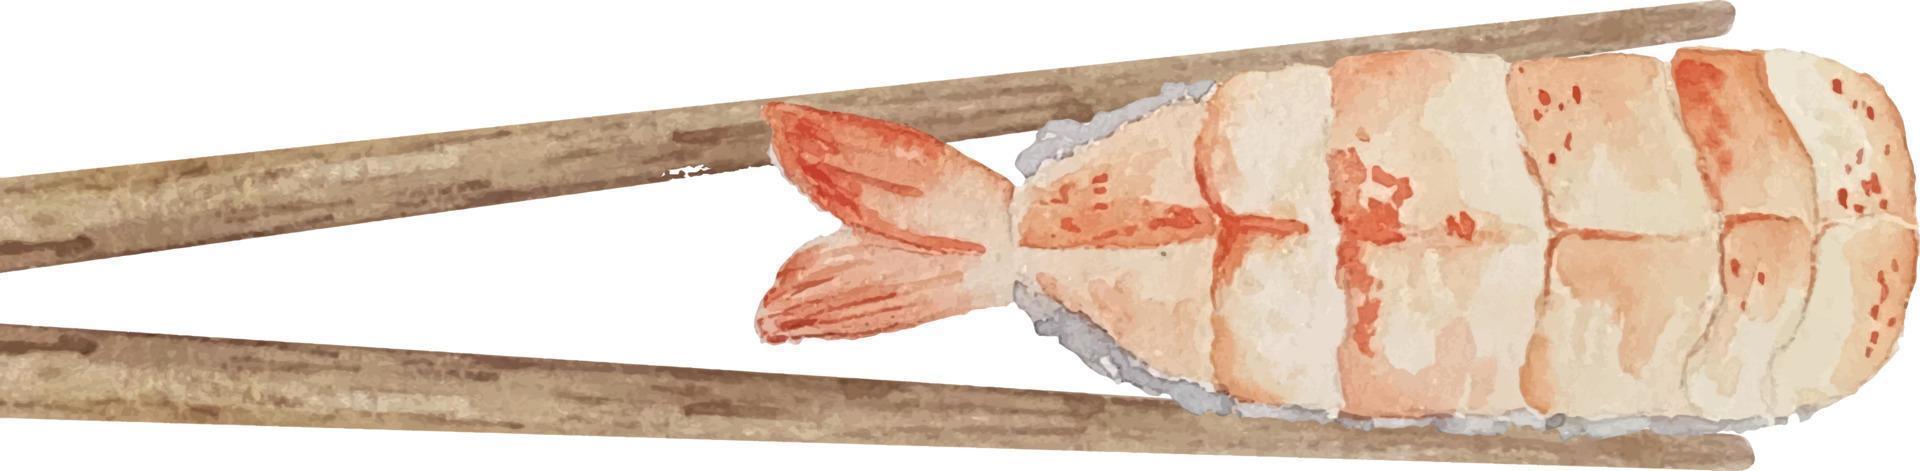 waterverf nigiri sushi met garnaal tussen houten eetstokjes top visie Aan wit achtergrond. vector